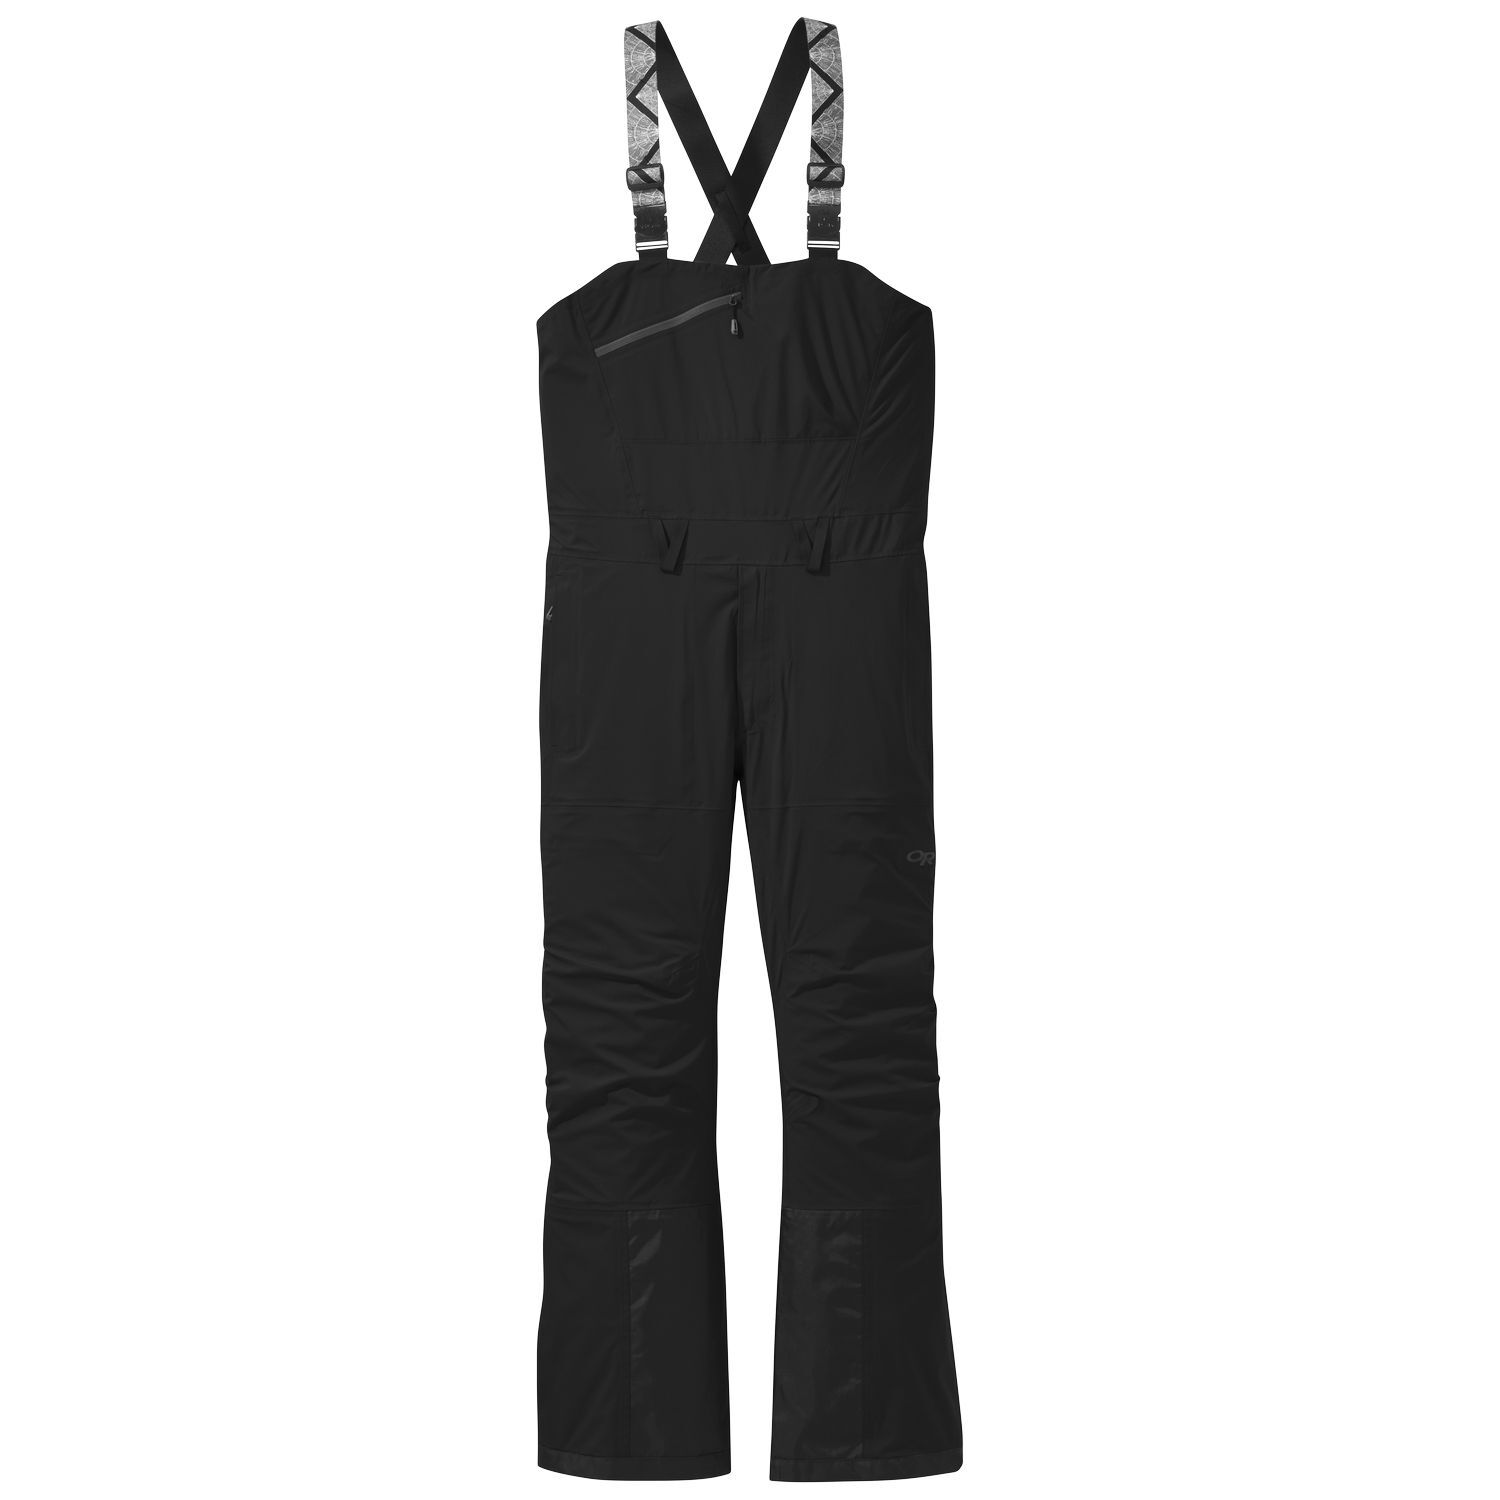 Outdoor Research Carbide Bibs - Pantalón de esquí - Hombre